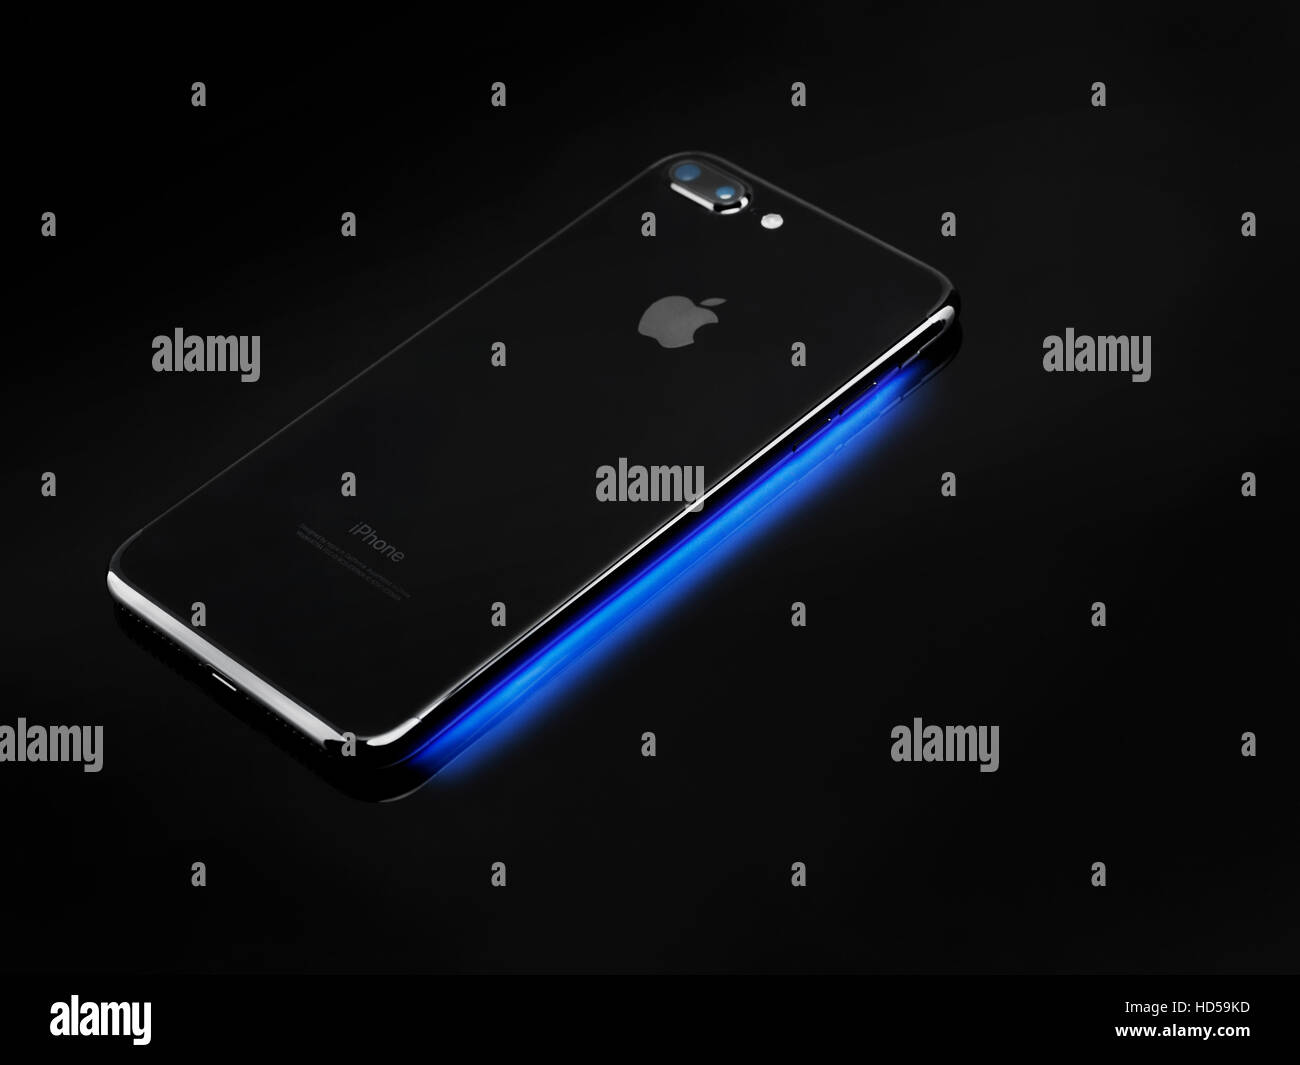 Kunstlerischen Stillleben Des Apple Iphone 7 Plus Auf Blaues Licht Aus Seinem Display Auf Schwarzem Hintergrund Stockfotografie Alamy